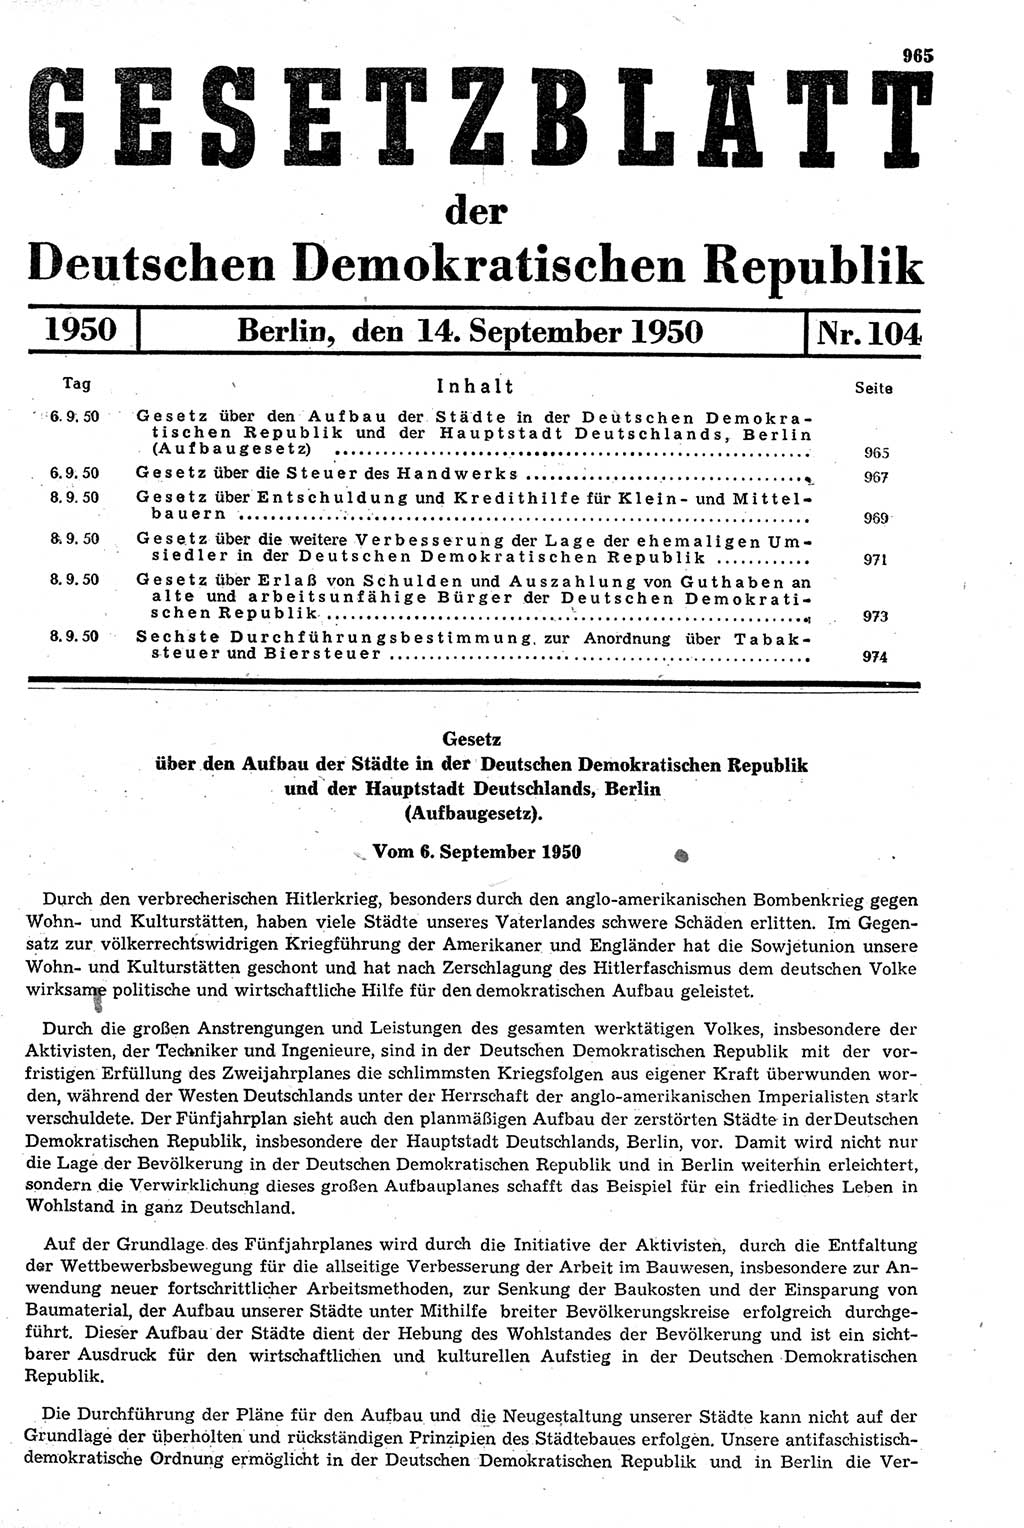 Gesetzblatt (GBl.) der Deutschen Demokratischen Republik (DDR) 1950, Seite 965 (GBl. DDR 1950, S. 965)